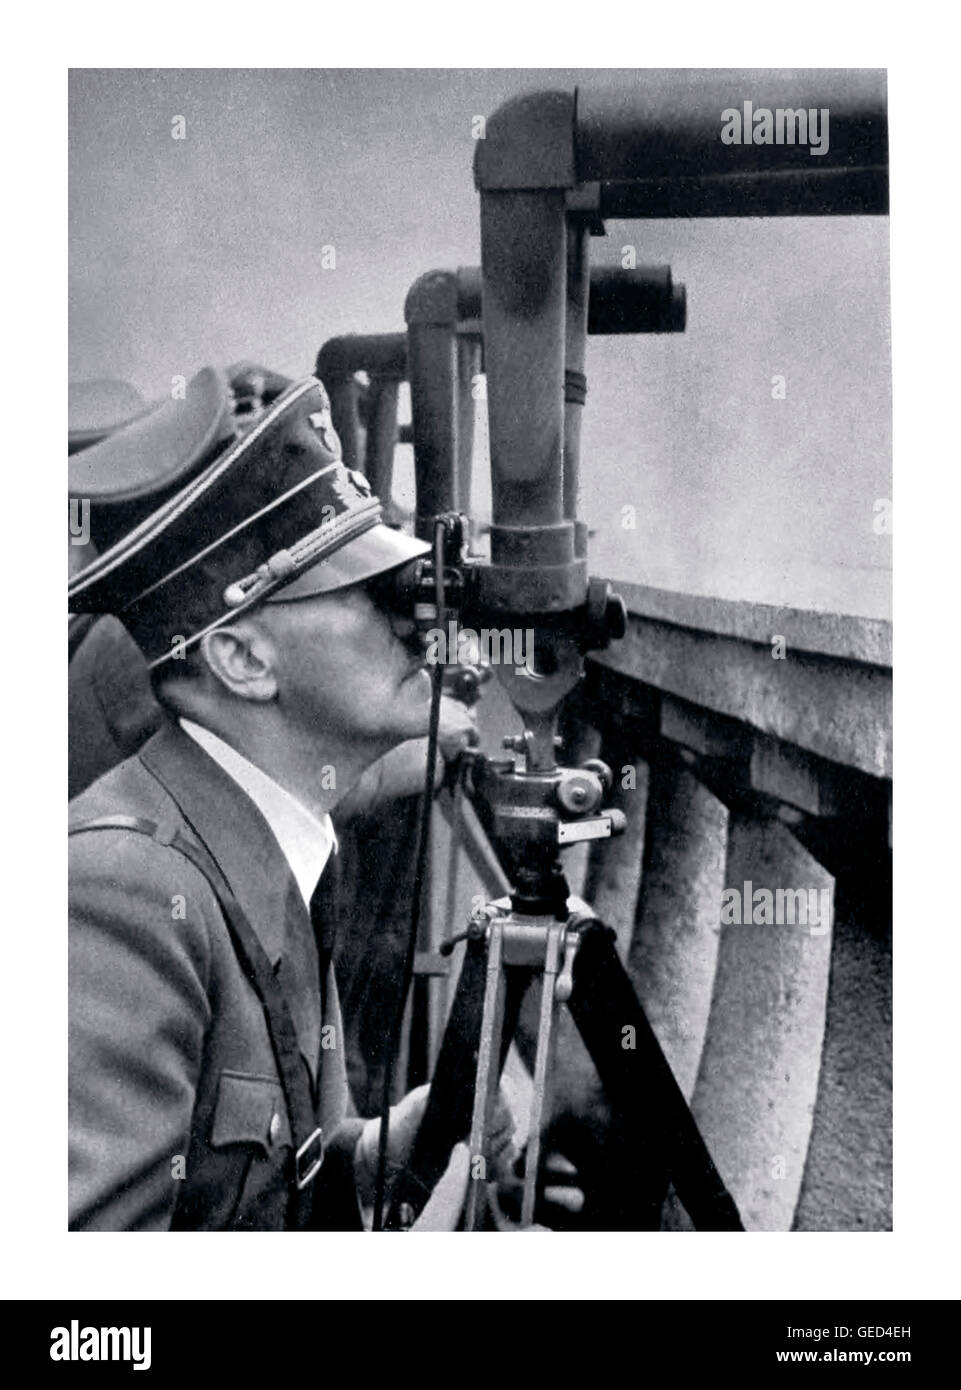 ADOLF HITLER VARSOVIE POLOGNE INVASION OCCUPATION SIÈGE Adolf Hitler regarde à travers le périscope binoculaire une bataille menée à l'extérieur de Varsovie pendant le siège en 1939. Banque D'Images